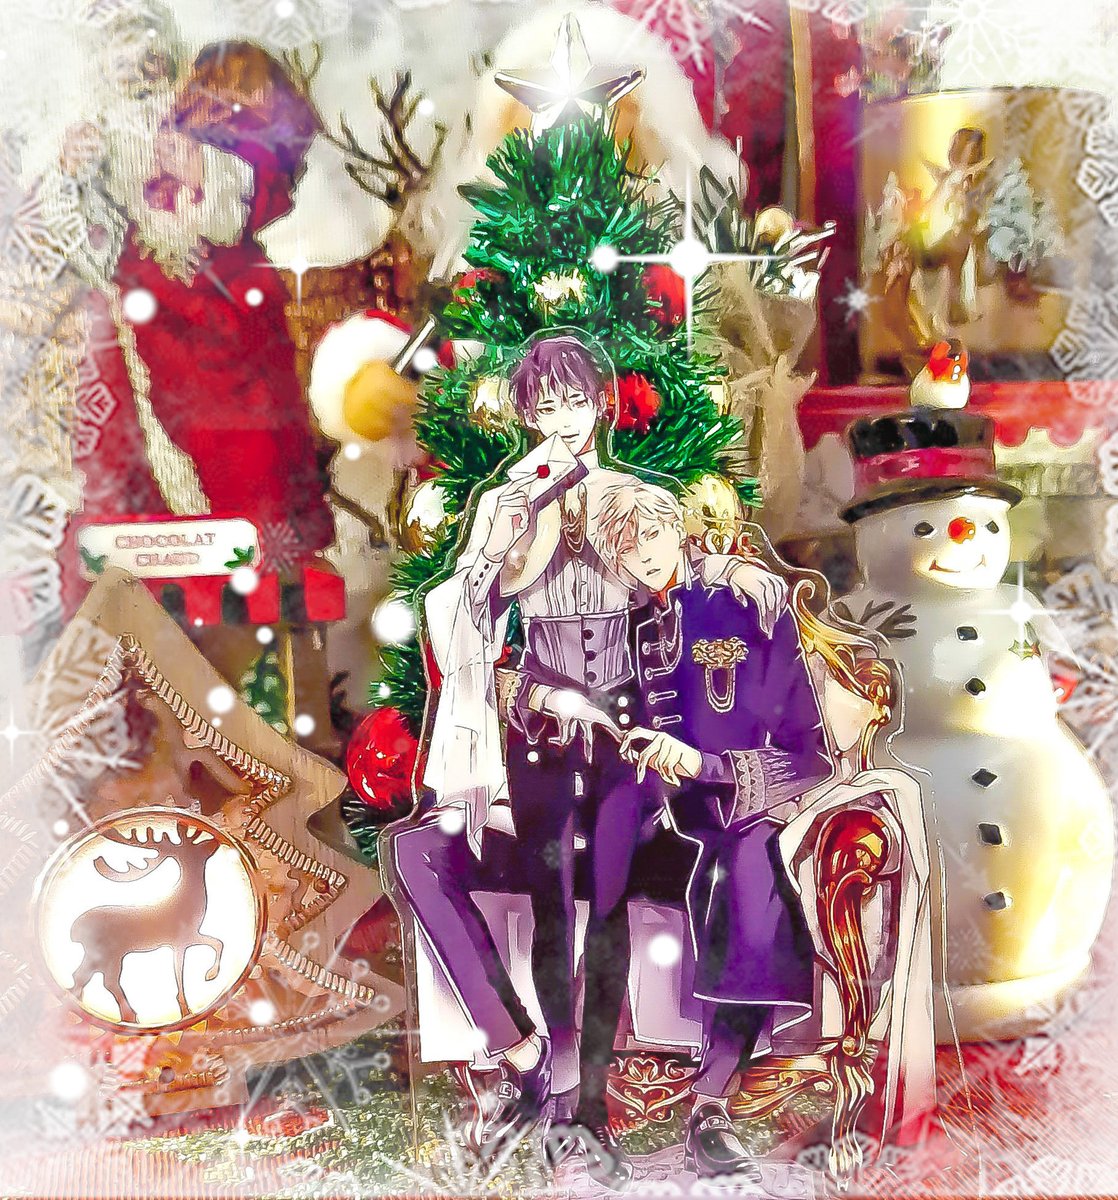 Je vous souhaite à tous un très joyeux Noël 🎅🎁🎄

Merry Christmas everyone 🎅🎁🎁

#Christmas #merrychristmas #noel #joyeuxnoel #asoumitsuaki #mitsuakiasou #麻生ミツ晃 #sekaideichibantooikoi #世界でいちばん遠い恋 #yaoi #yaoicouple #yaoimerch #boyslove #fujoshi #otaku #otakulife